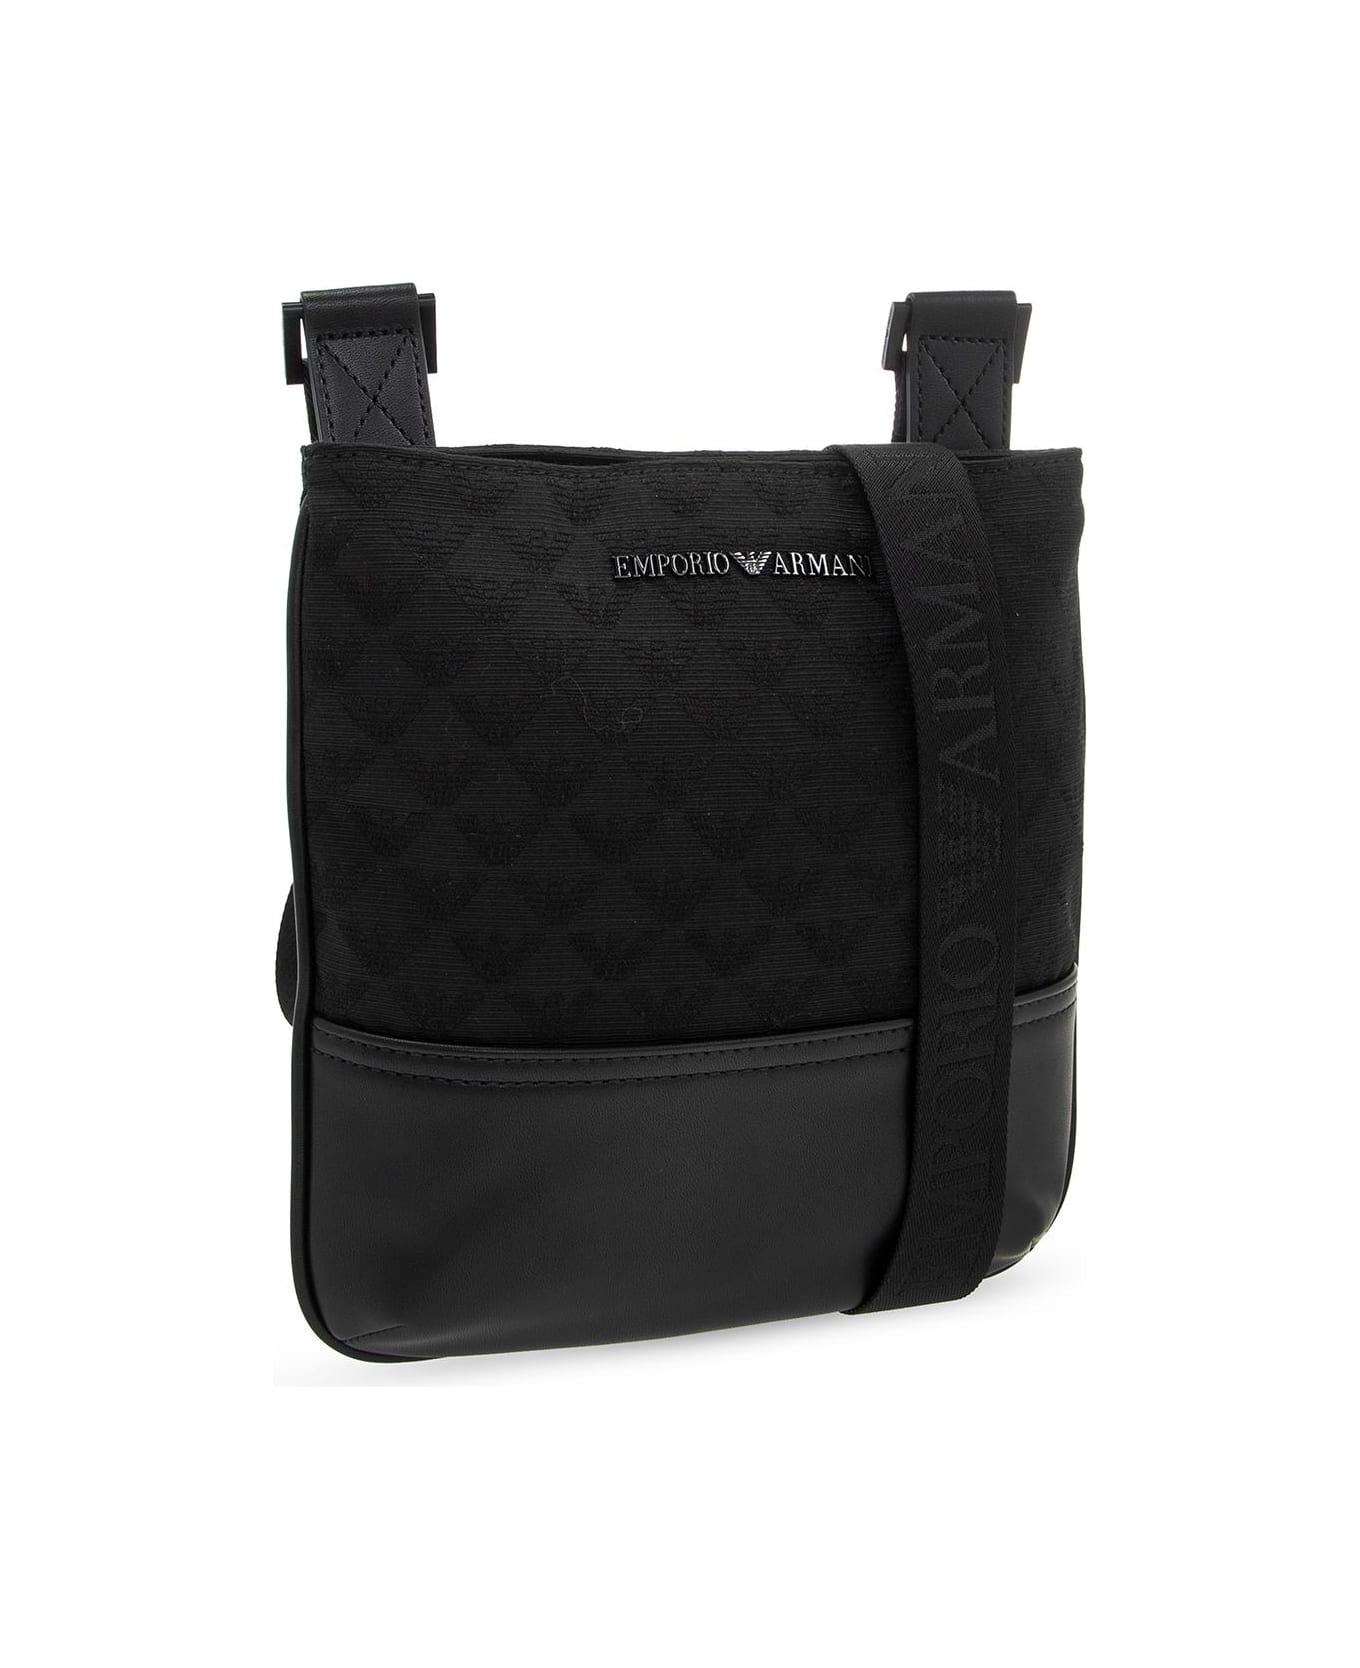 Emporio Armani Shoulder Bag With Logo - Nero